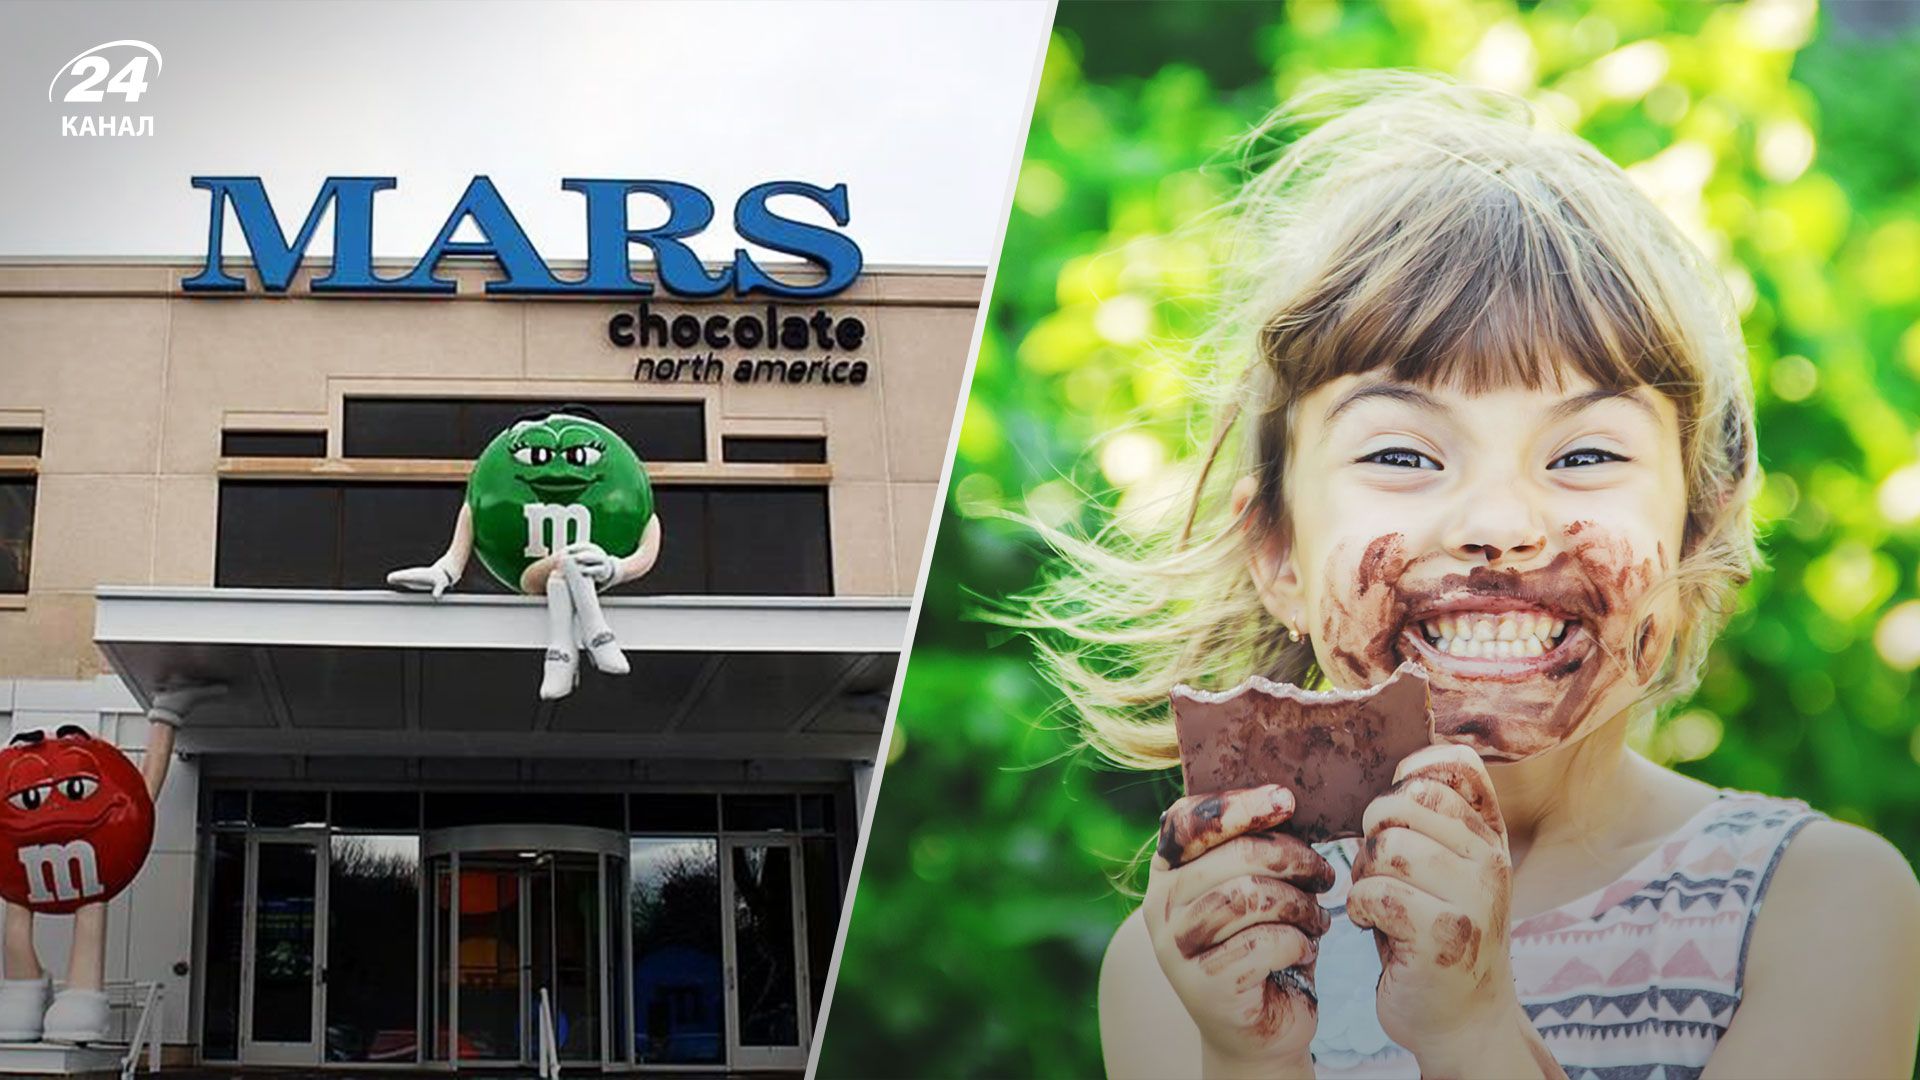 Mars хоче переконати людей з окремих країн їсти більше шоколаду, щоб збільшити продажі власної продукції